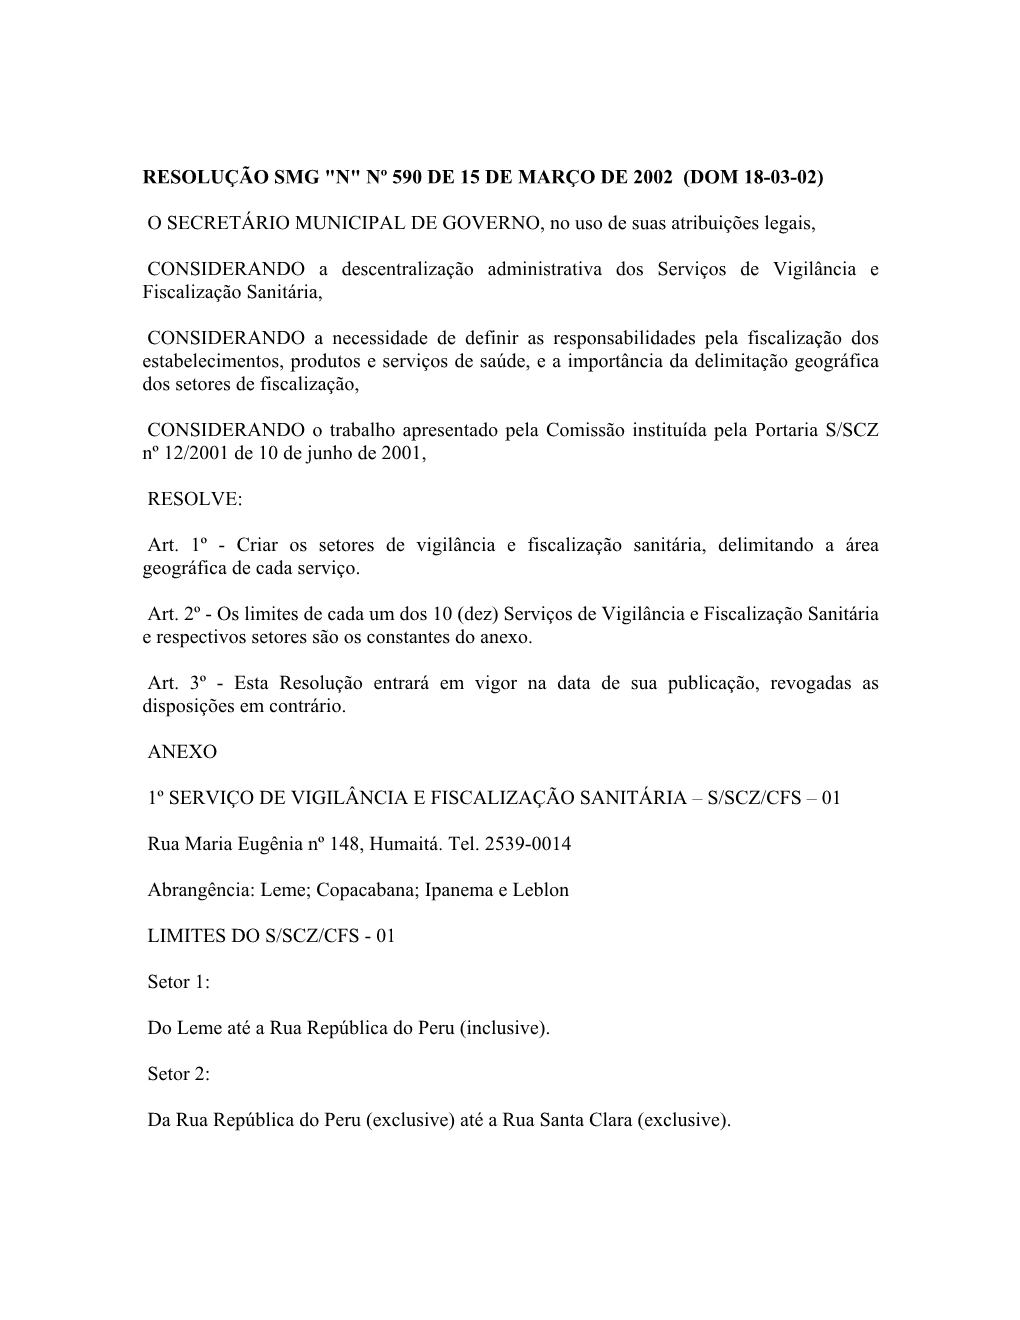 Resolução Municipal N° 590 De 15/03/2002, D.O.M. De 18/03/2002